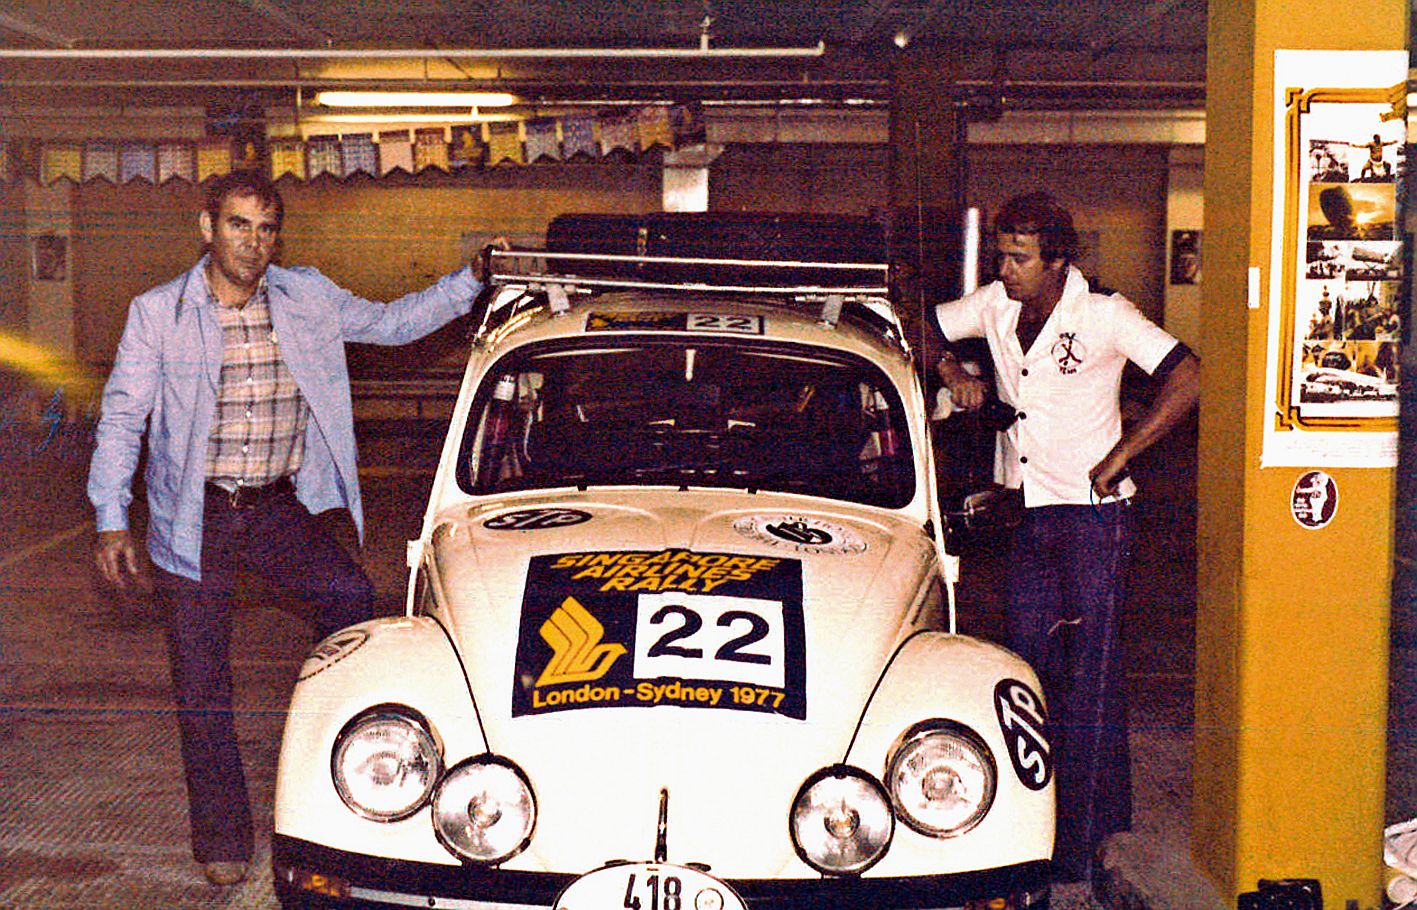 Un rallye-marathon de 33 000 kilomètres : le Londres-Sydney dans lequel se sont lancés, en 1977, Jacques Jeandot et son copilote, Werner Koch, est une épopée comme on n’en fait plus.A bord de la voiture n°22, rapidement surnommée la « Cox caldoche », l’éq